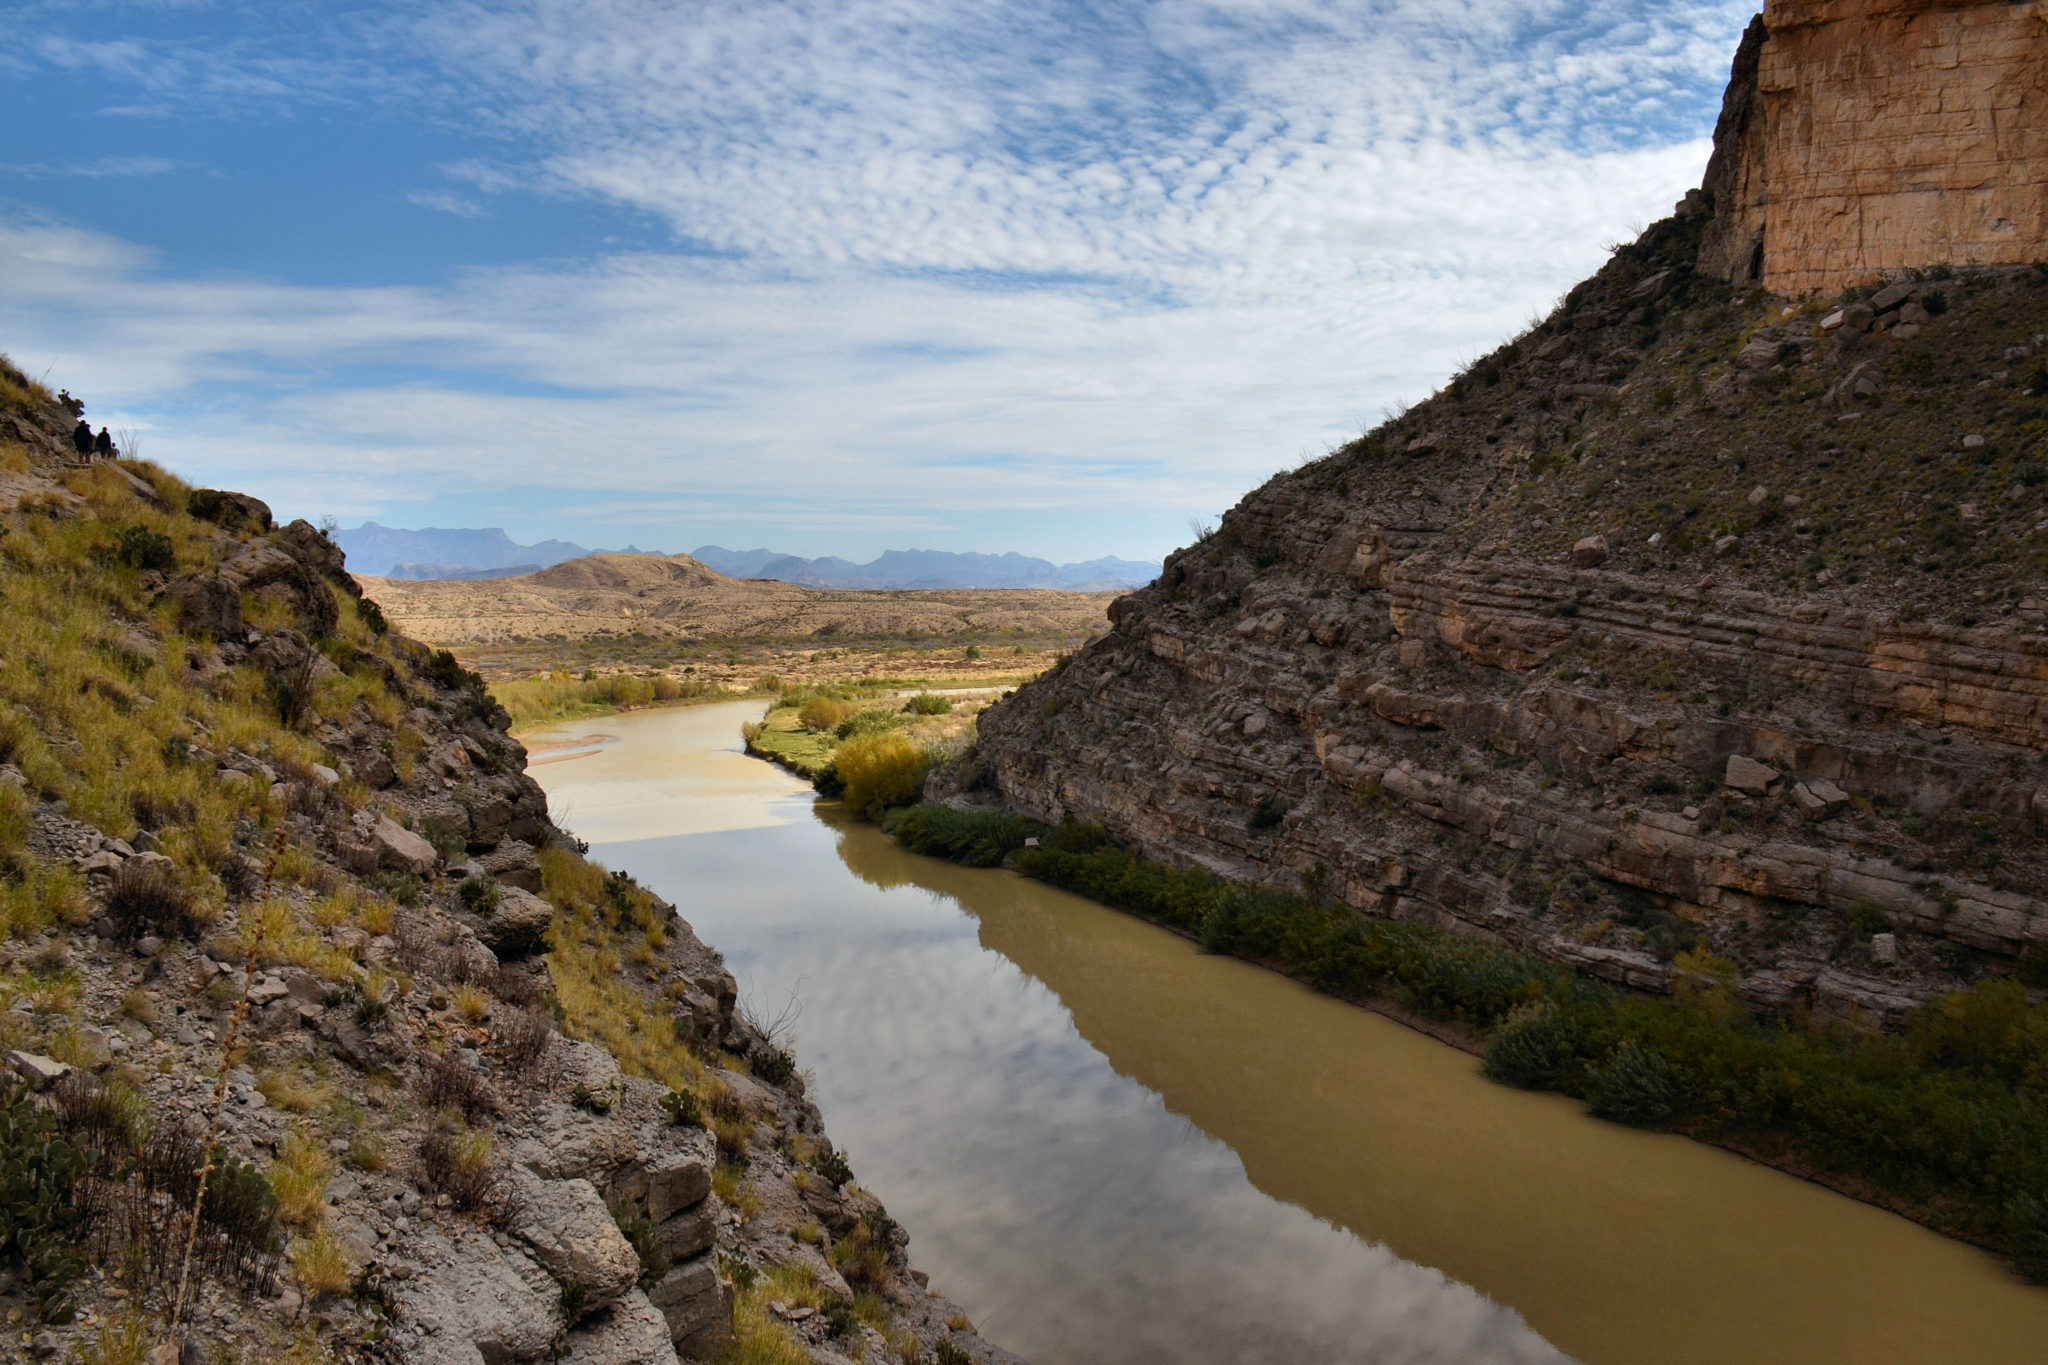 The Rio Grande entering Santa Elena Canyon